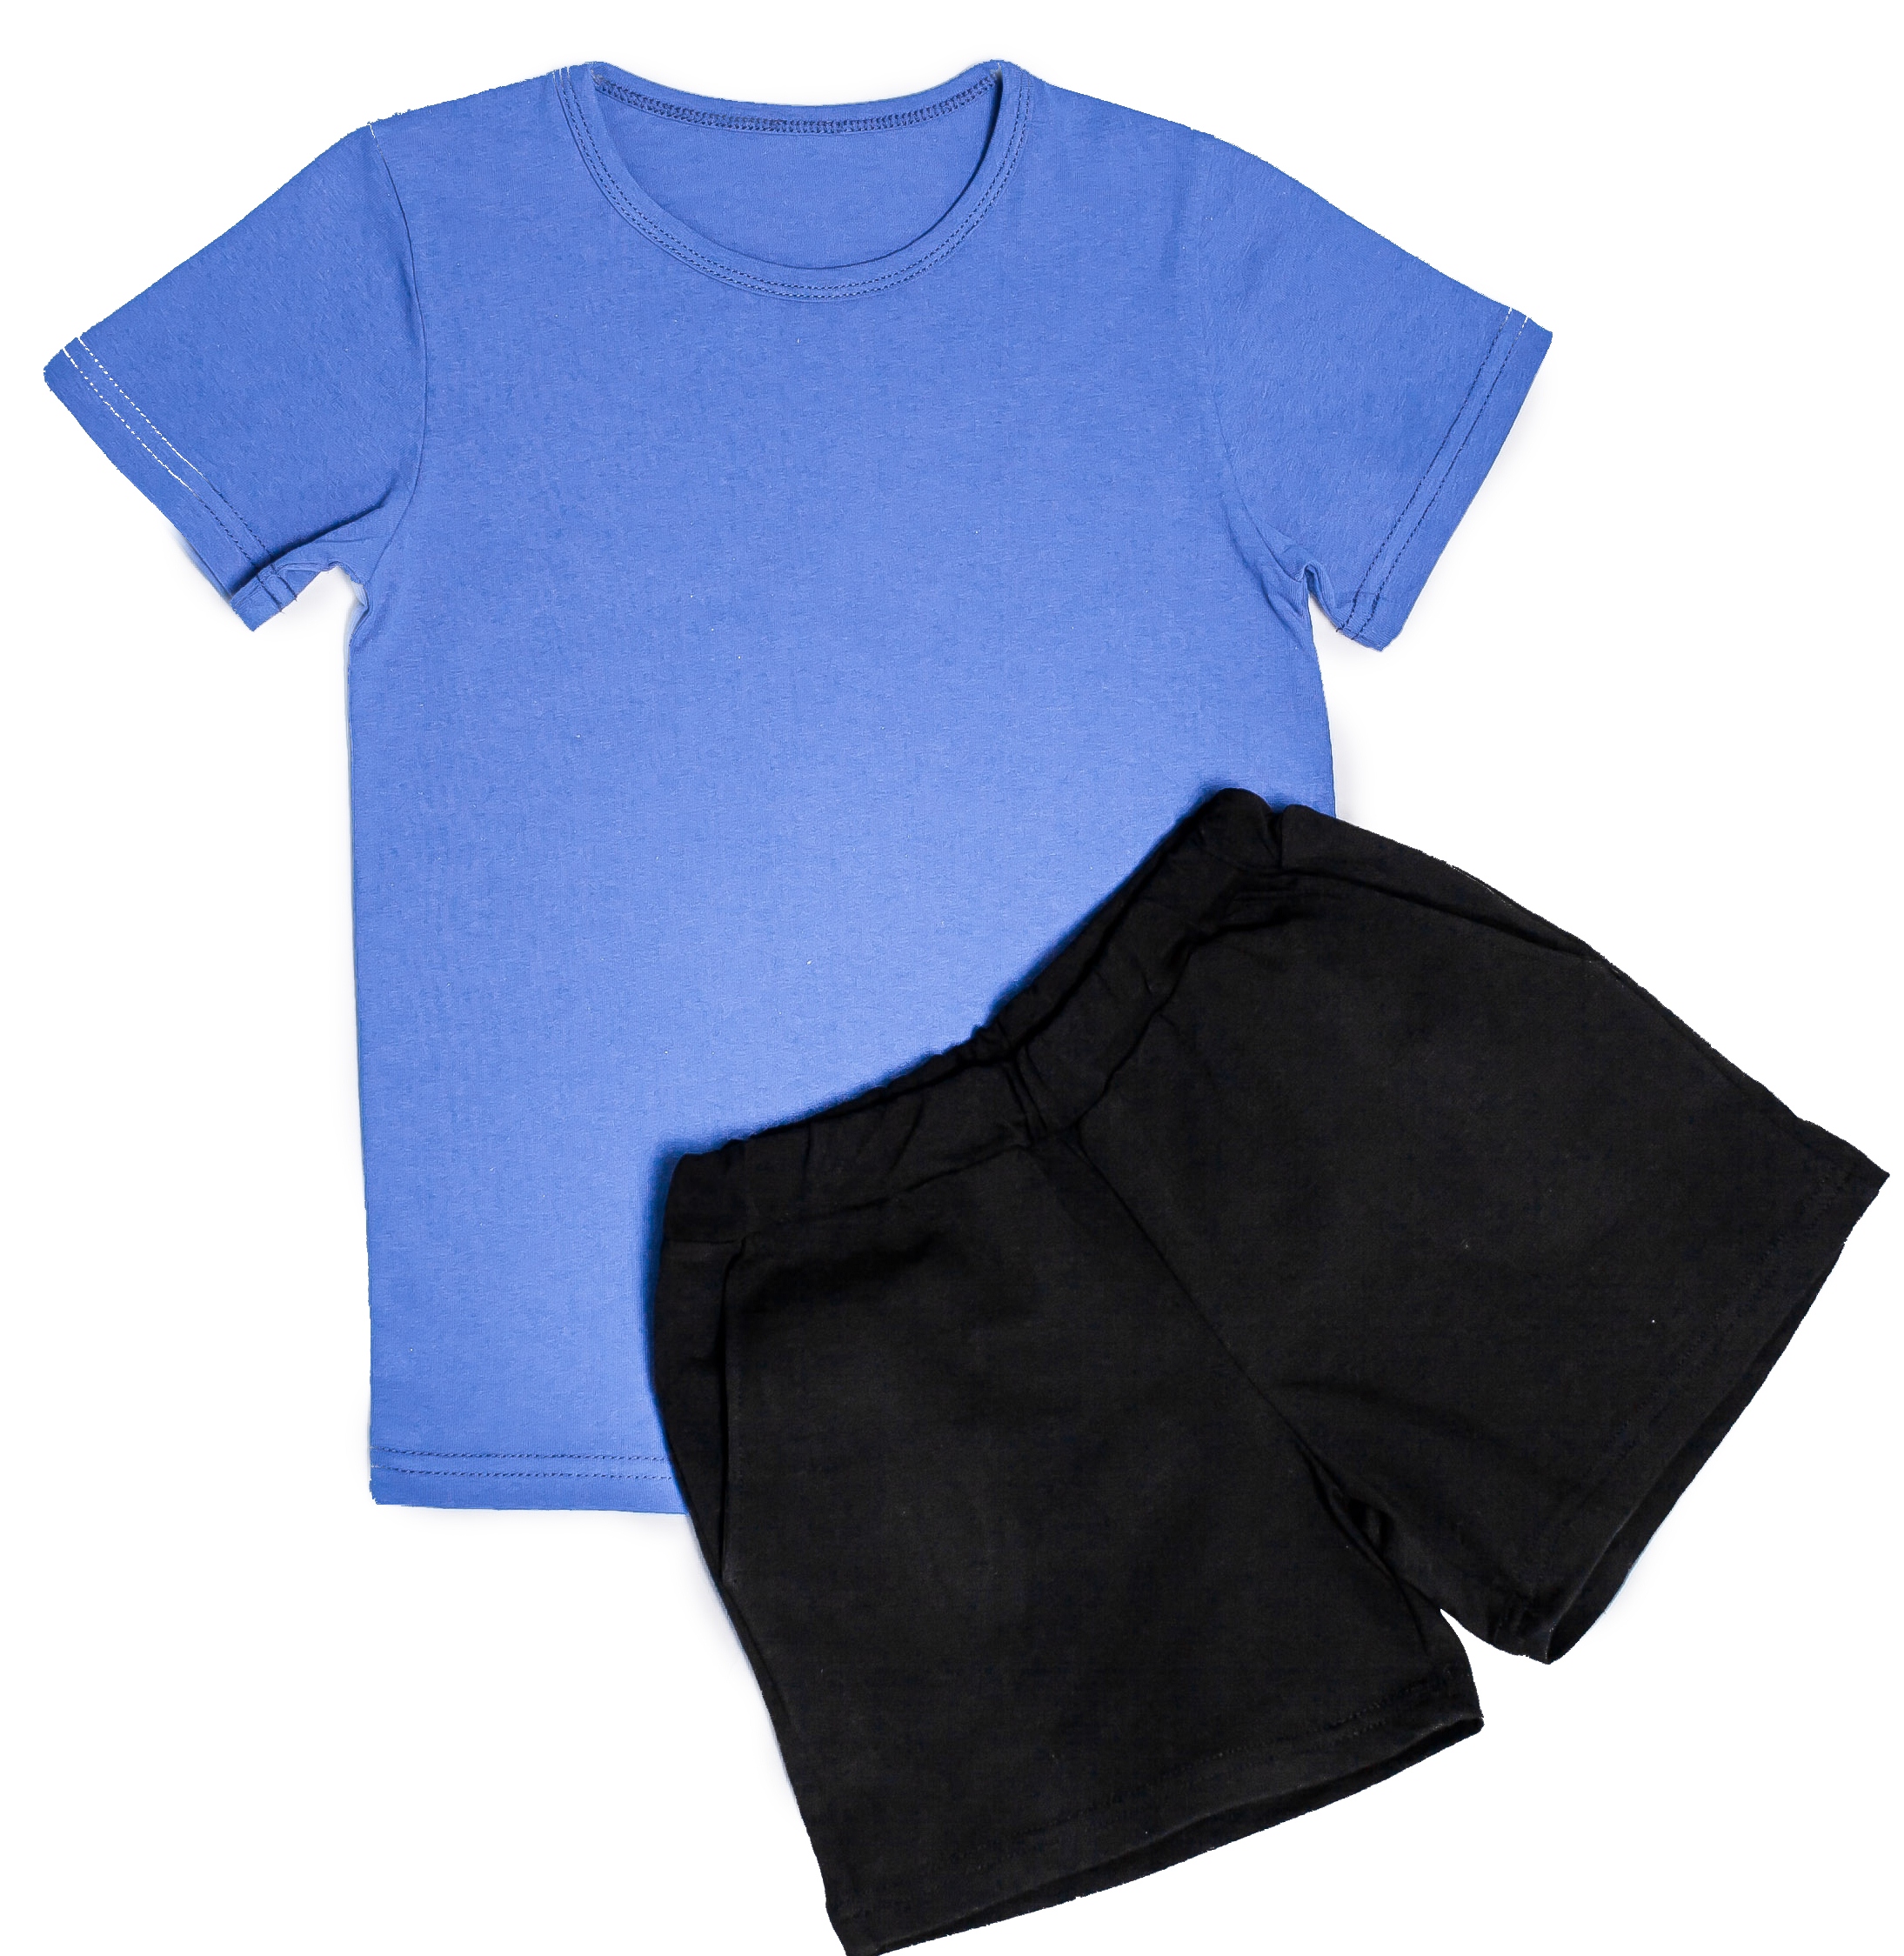 Озон футболки шорты. Детские шорты для физкультуры. Чёрные шорты для мальчика на физкультуру. Синяя футболка черные шорты. Детские спортивные шорты и футболка.